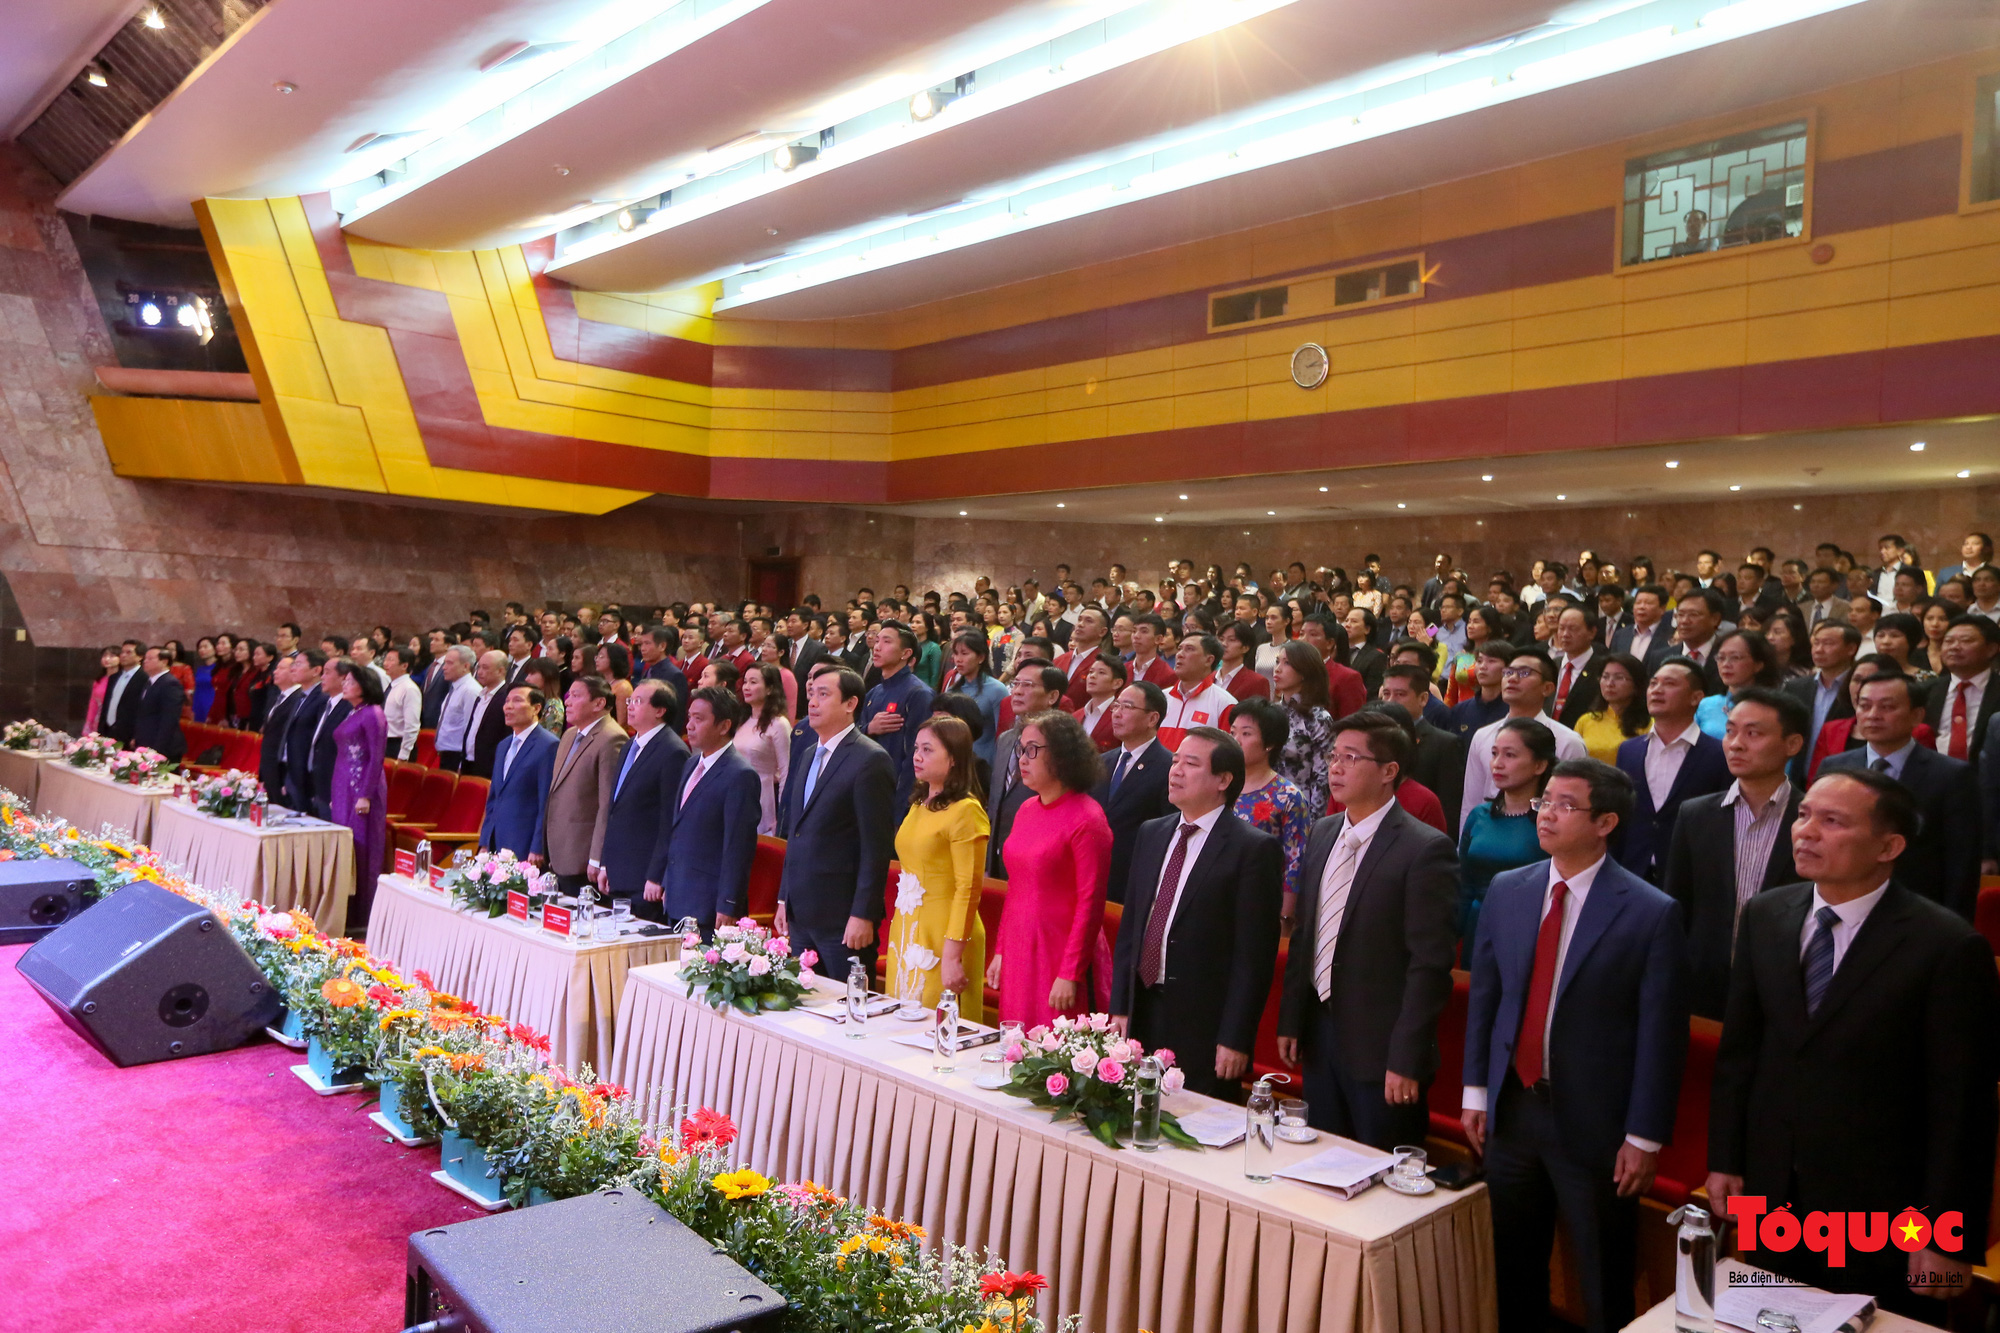 Tham dự Đại hội có Phó Chủ tịch nước Đặng Thị Ngọc Thịnh cùng đại diện các Bộ, ban, ngành và 300 đại biểu là các điển hình tiên tiến trên các lĩnh vực Văn hóa, Thể thao và Du lịch.